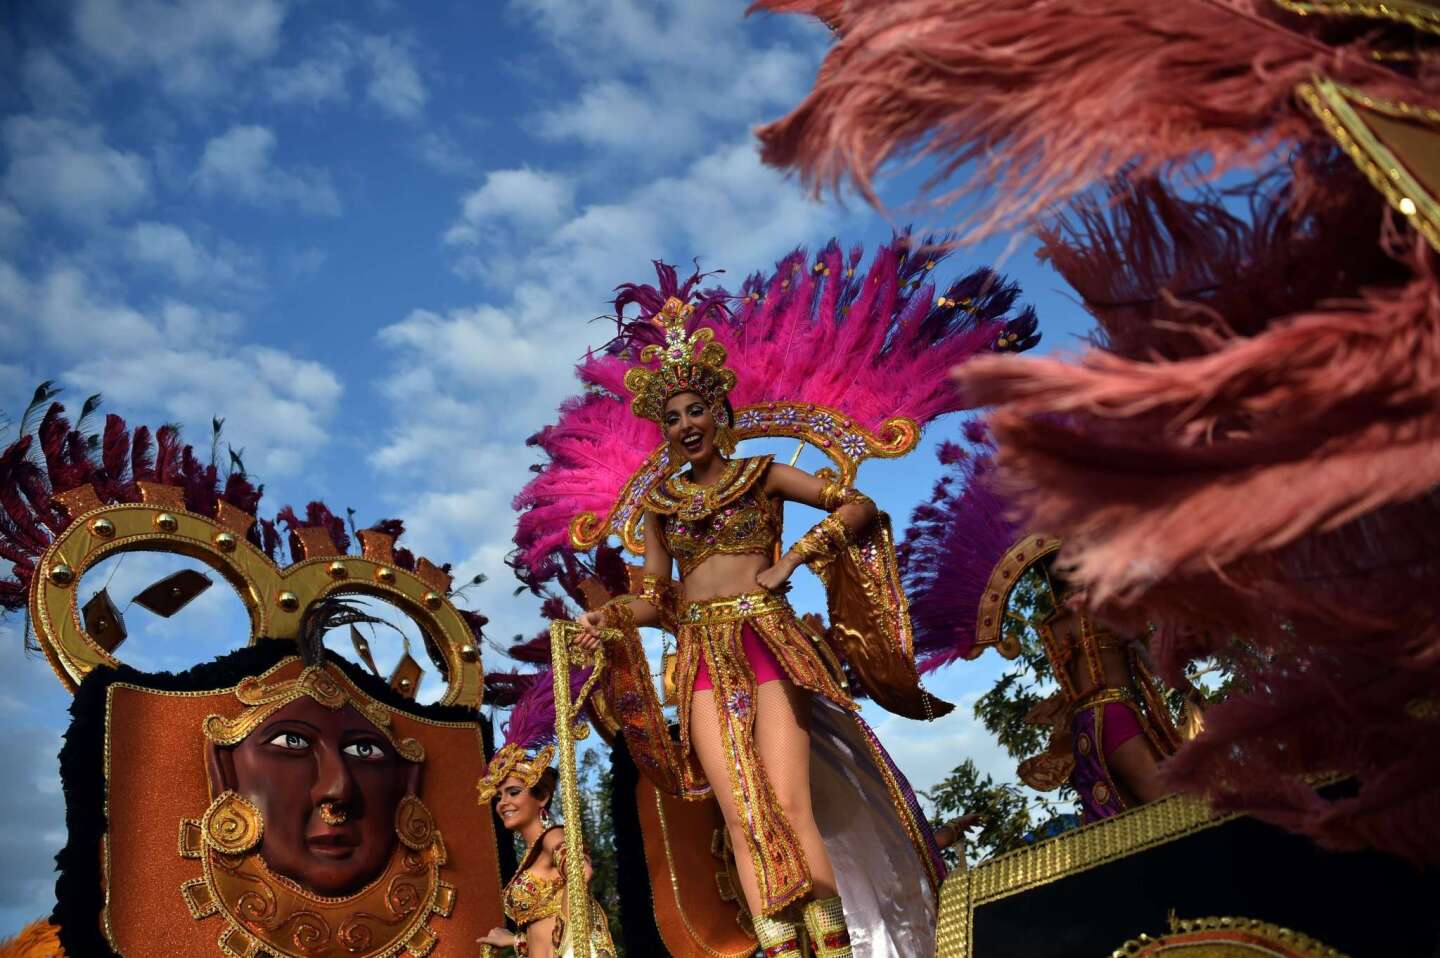 Carnival celebrations